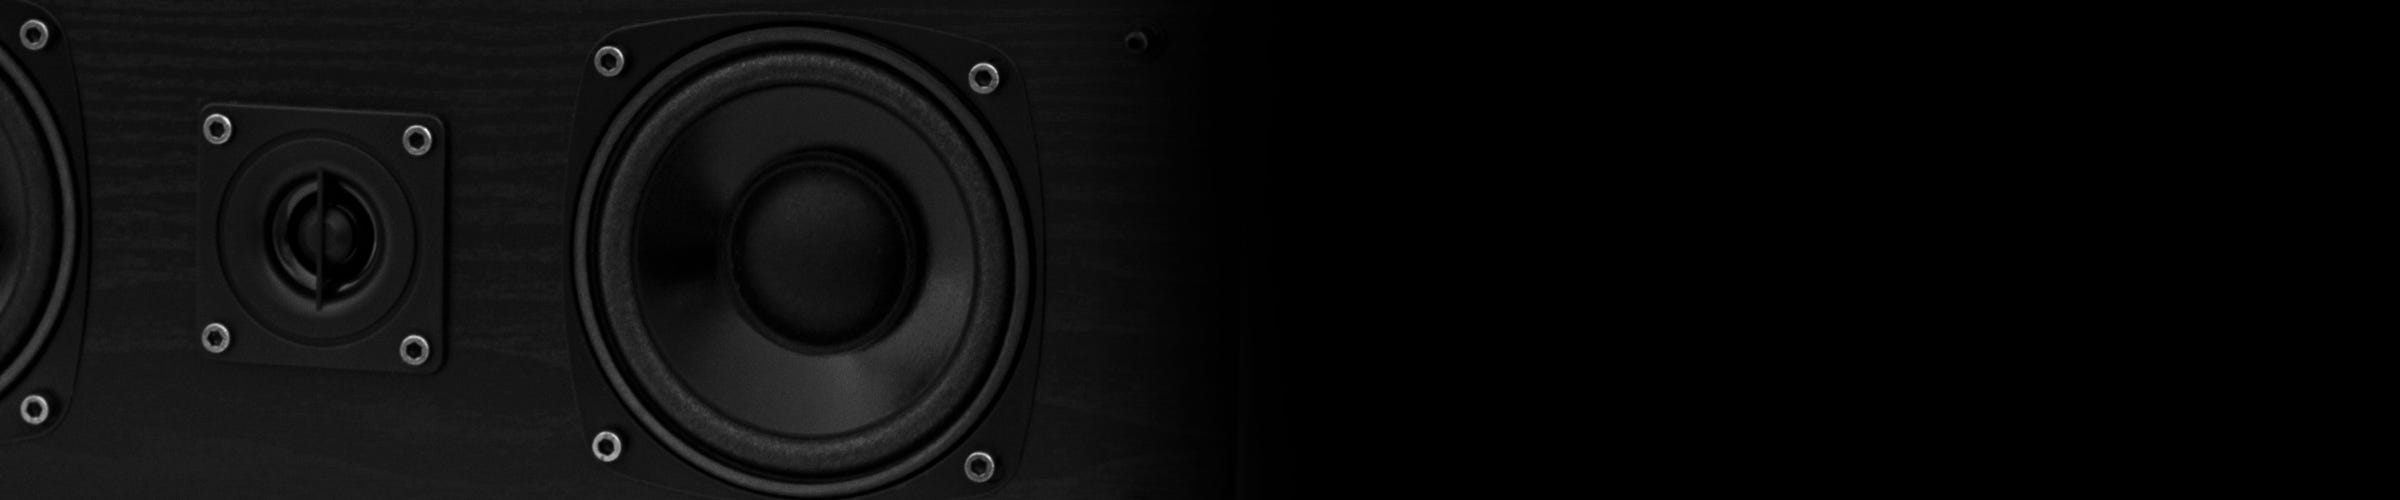 SXC-BK Center Channel Speaker Premium Components